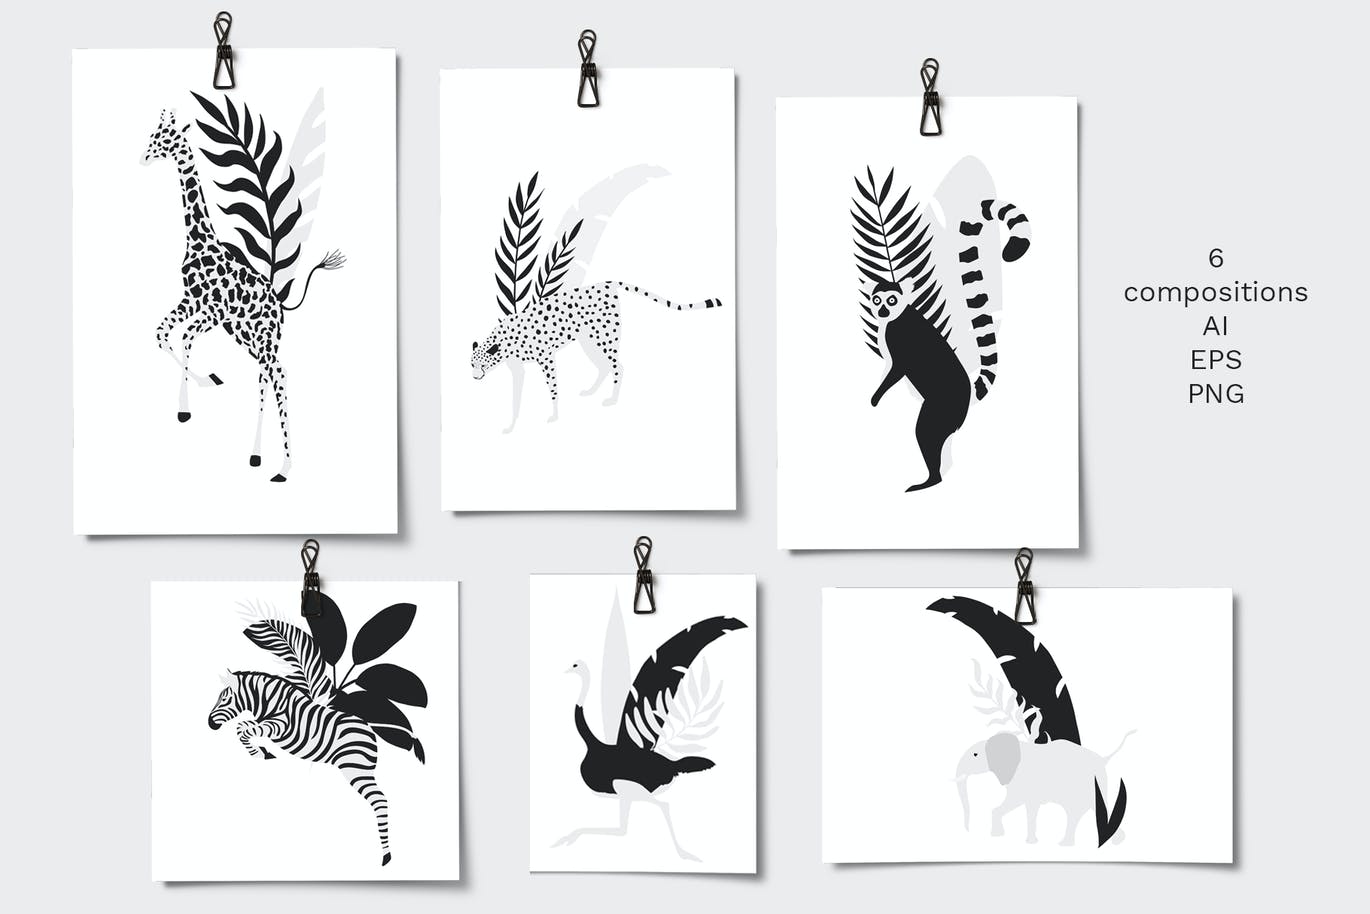 热带图案和动物剪贴画 Tropical patterns & animals clipart 图片素材 第9张